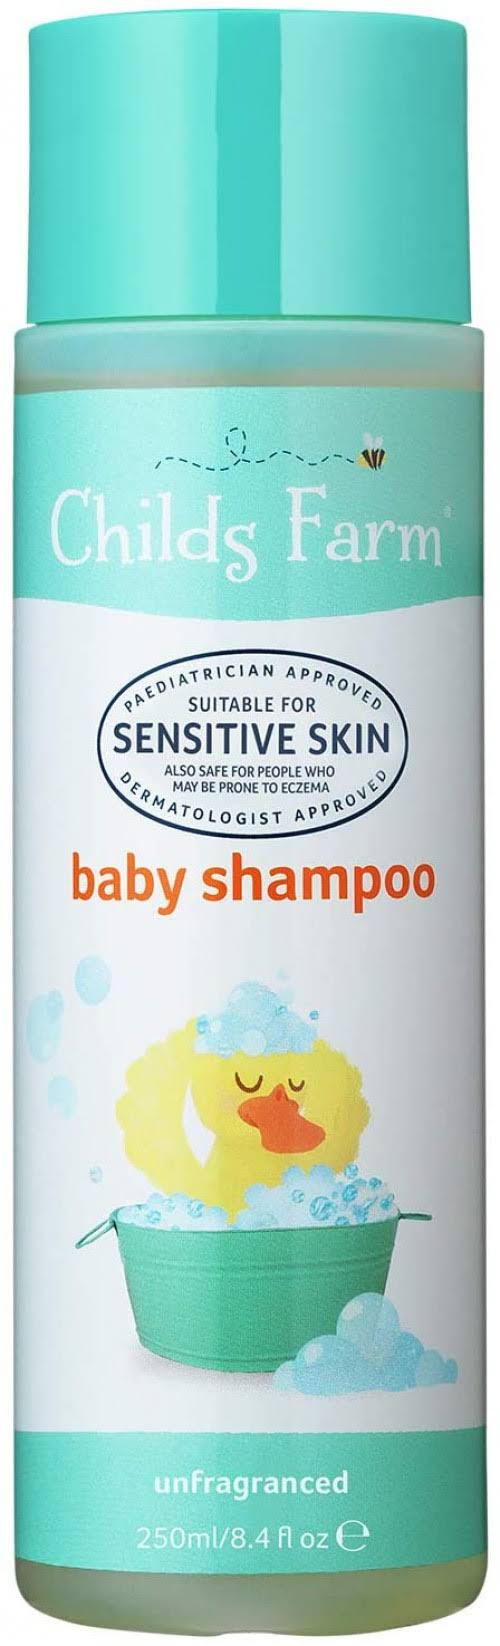 Childs Farm Baby Shampoo - Unfragranced, 250ml